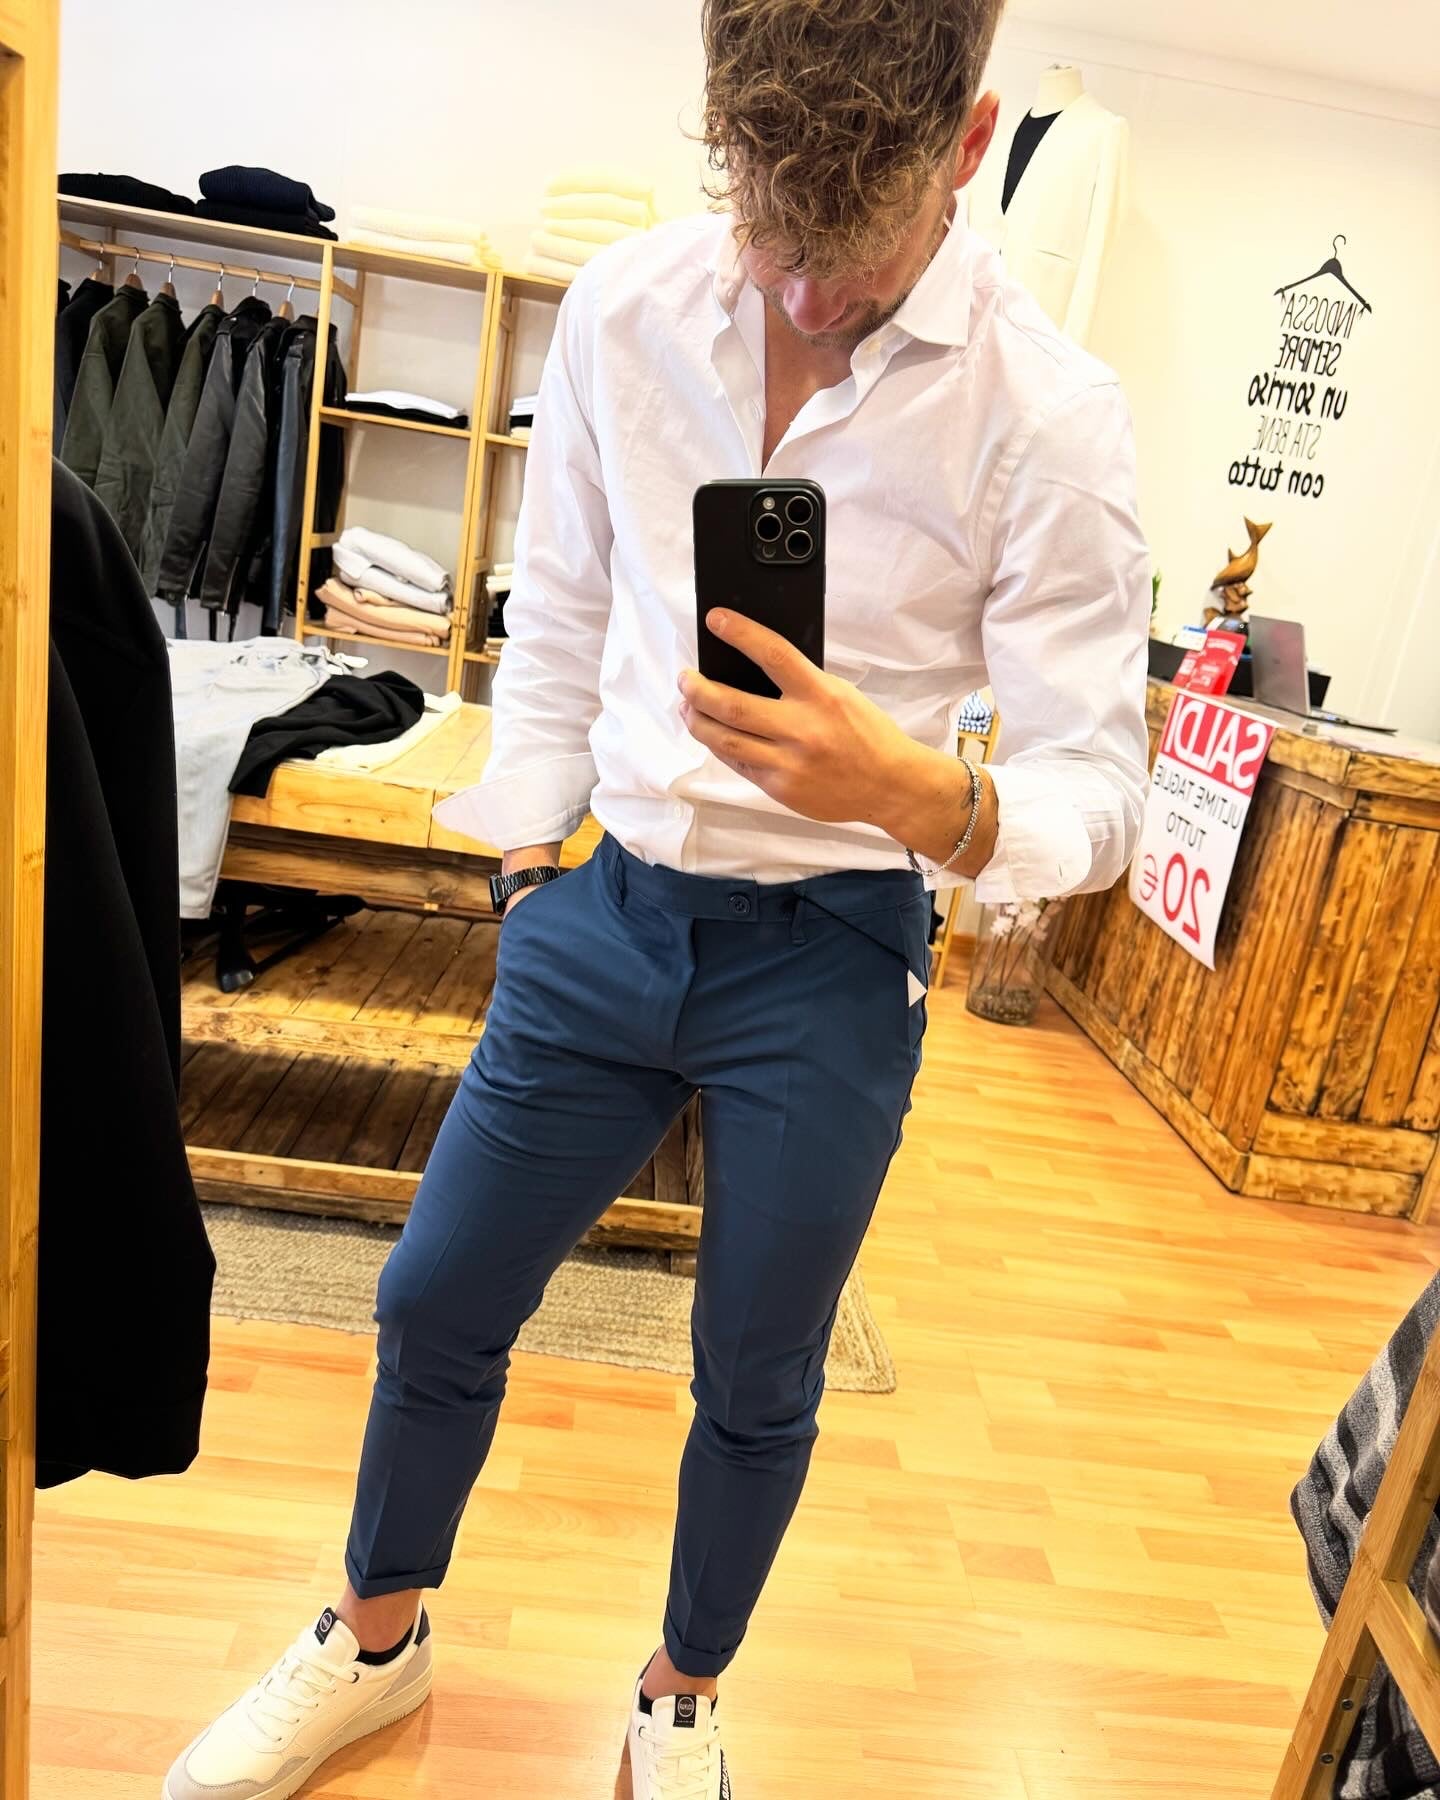 Pantalone blu modello Capri con risvoltino